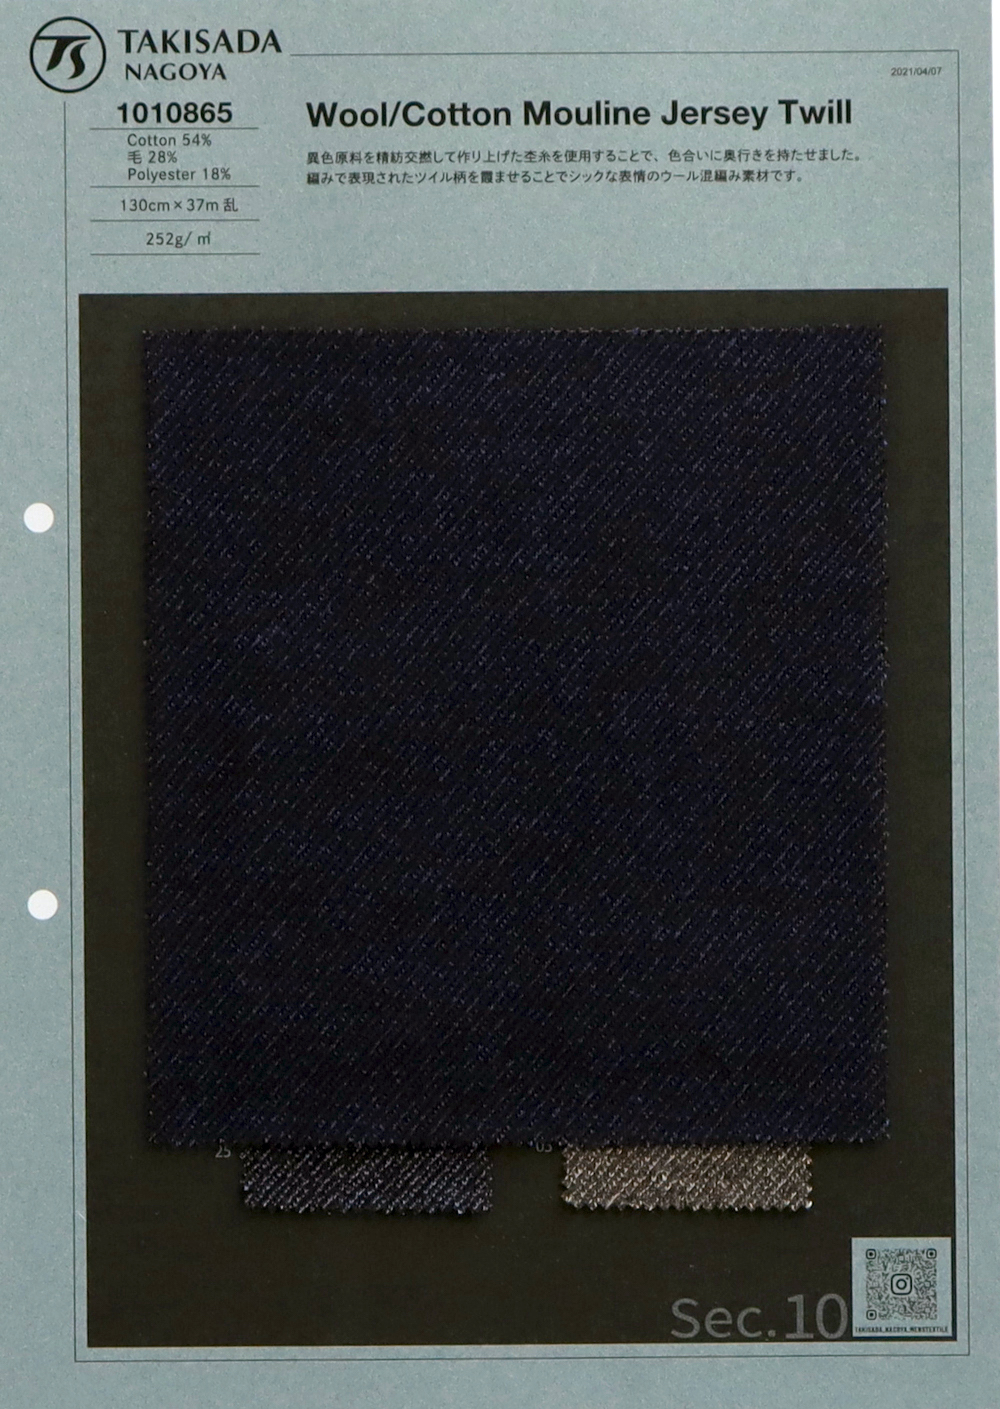 1010865 Motif Sergé De Jersey Laine/coton Chiné[Fabrication De Textile] Takisada Nagoya